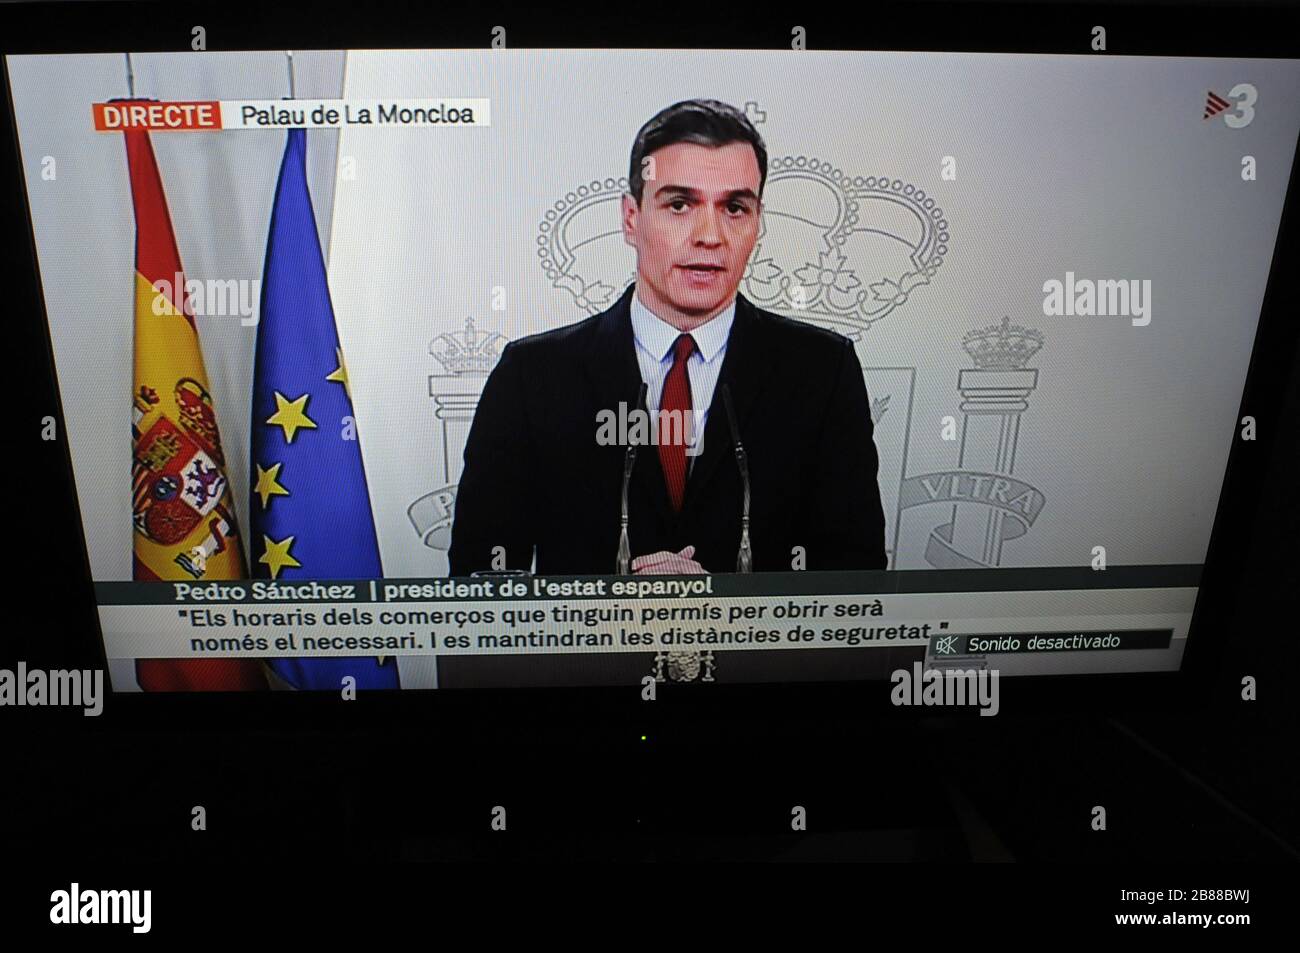 Der Präsident des spanischen Staates Pedro Sanchez übermittelt den Bürgern per Fernsehen den Alarmzustand in Spanien aufgrund des Infektionsrisikos Stockfoto